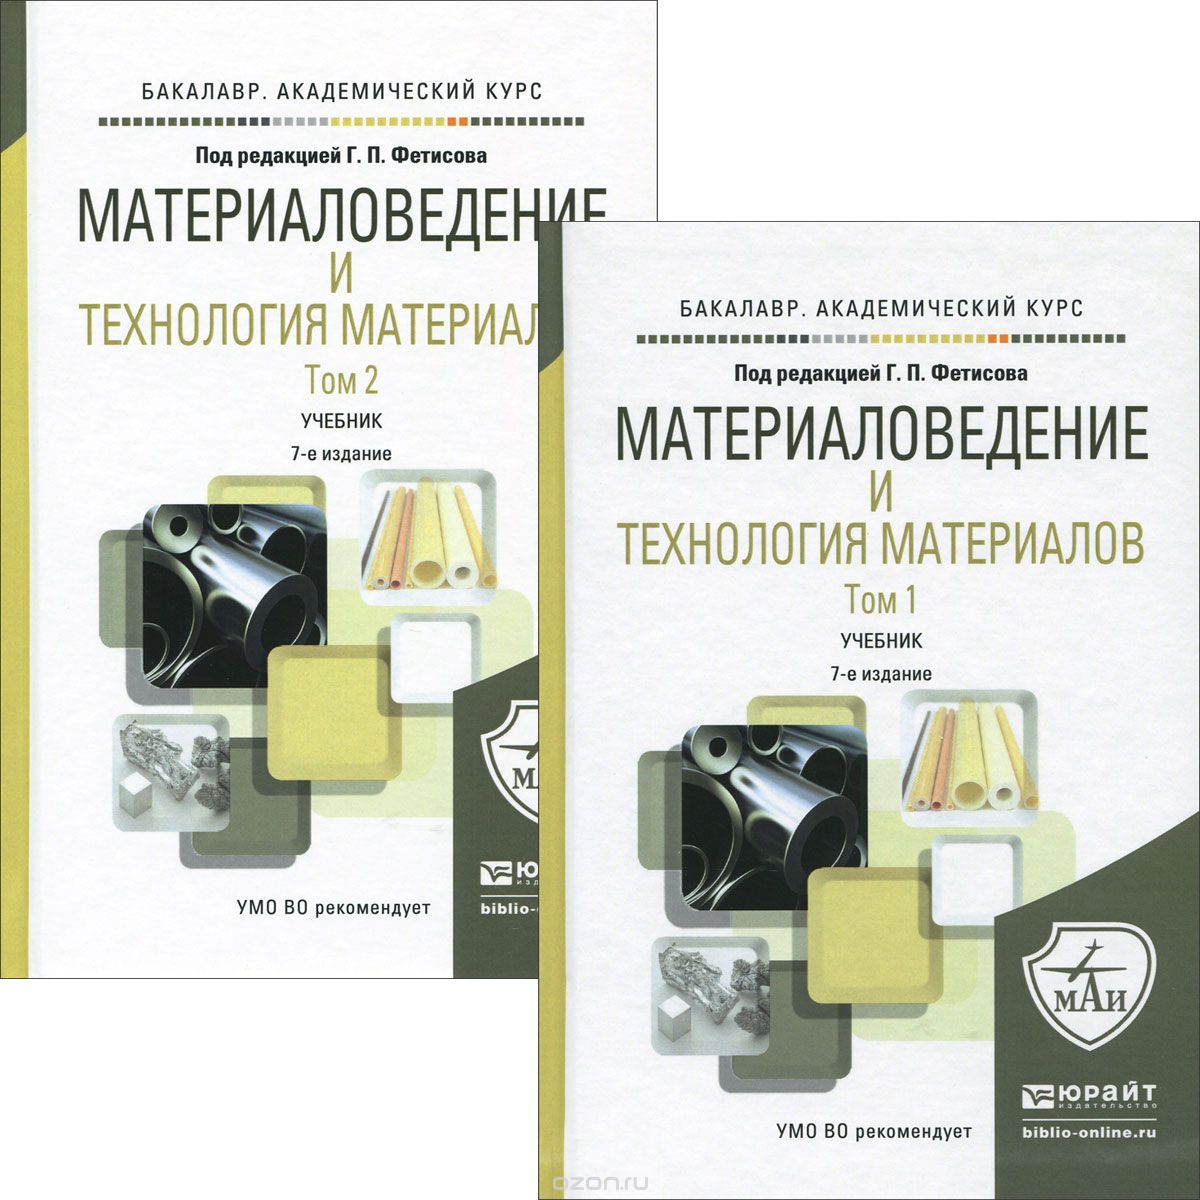 Скачать книгу "Mатериаловедение и технология материалов. Учебник. В 2 томах. Том 1-2 (комплект из 2 книг), Фетисов Г.П. - Отв. ред."